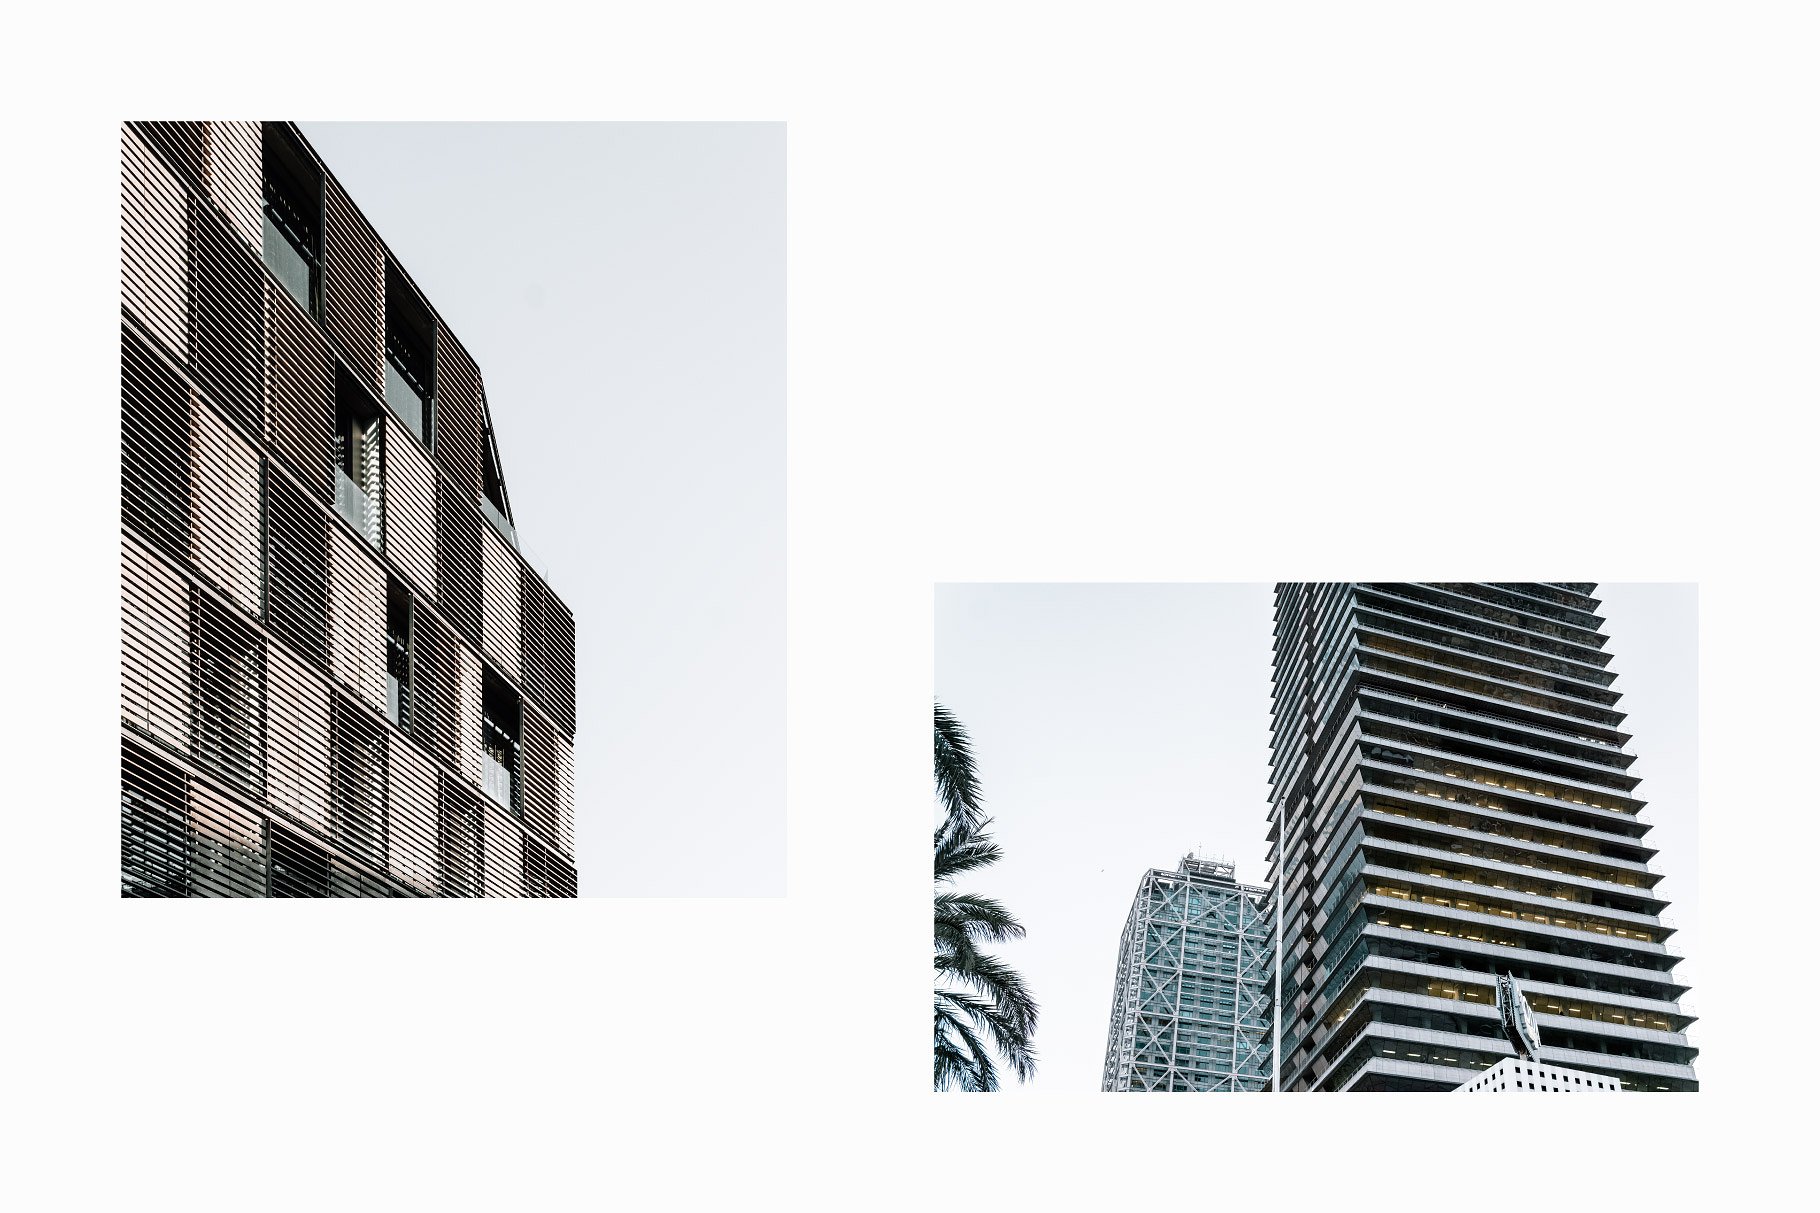 10张高分辨率建筑照片V.3 10 Architecture Photos Pack Vol.3插图(5)